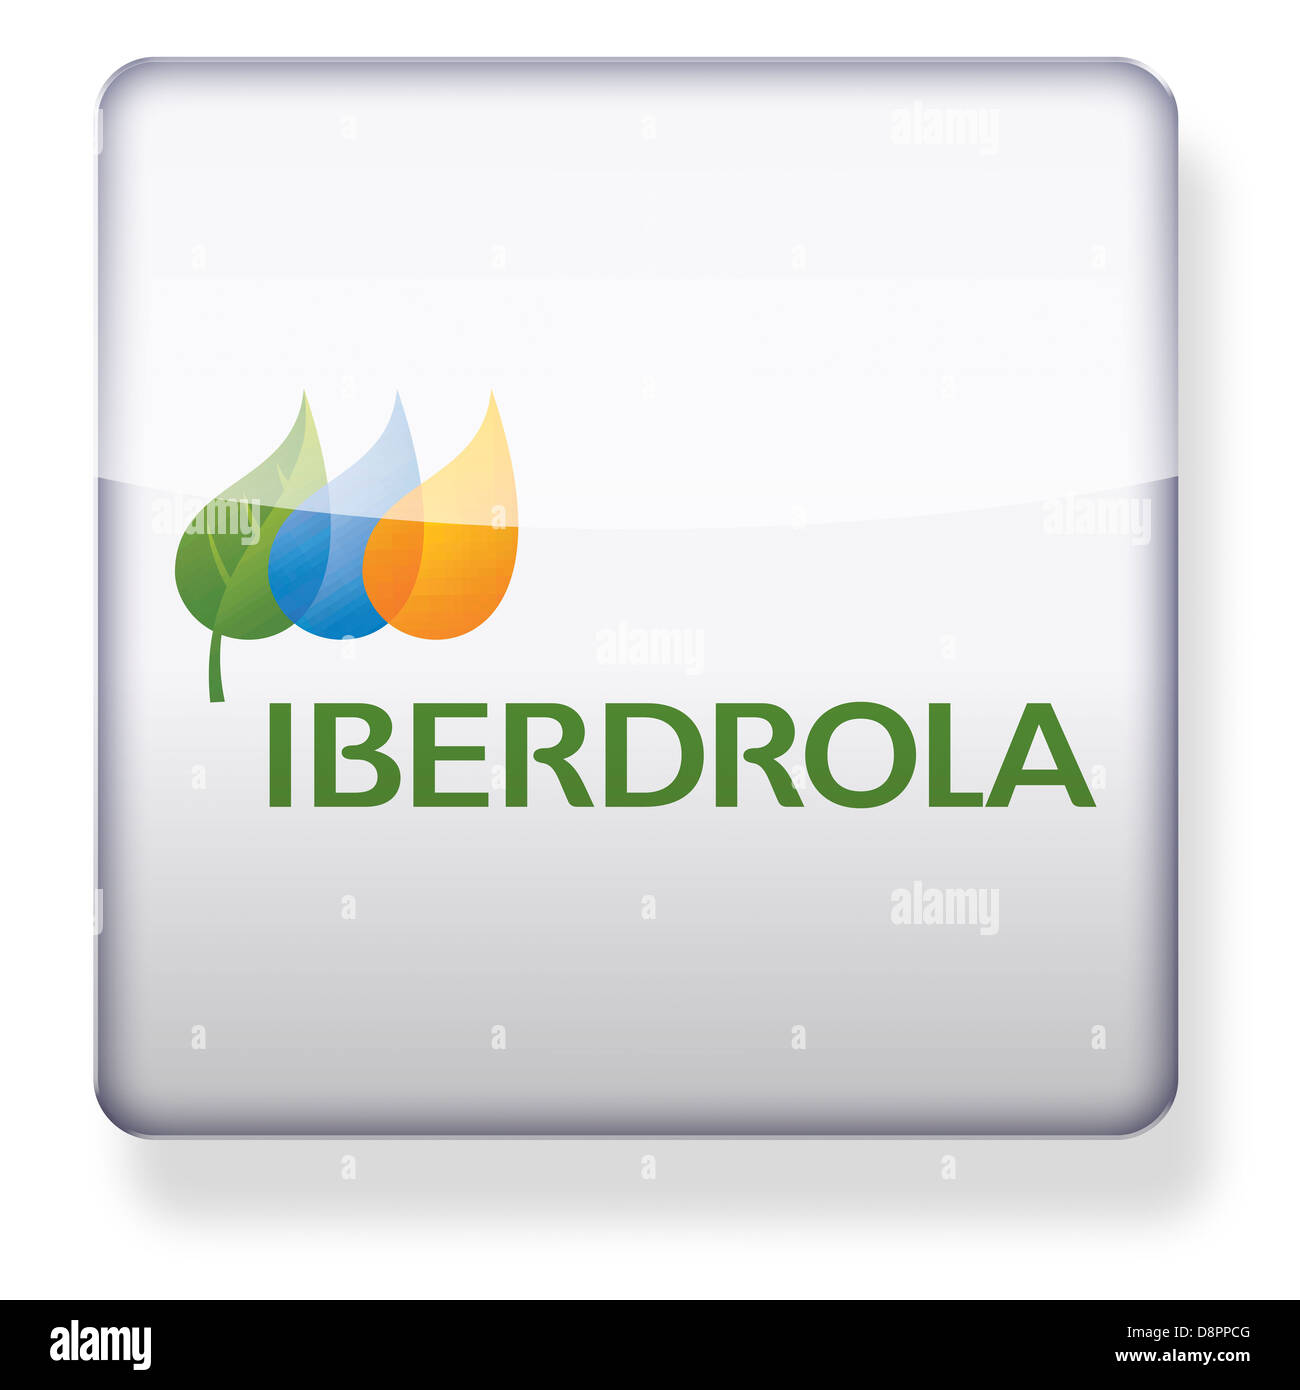 Iberdrola logo come l'icona di un'app. Percorso di clipping incluso. Foto Stock